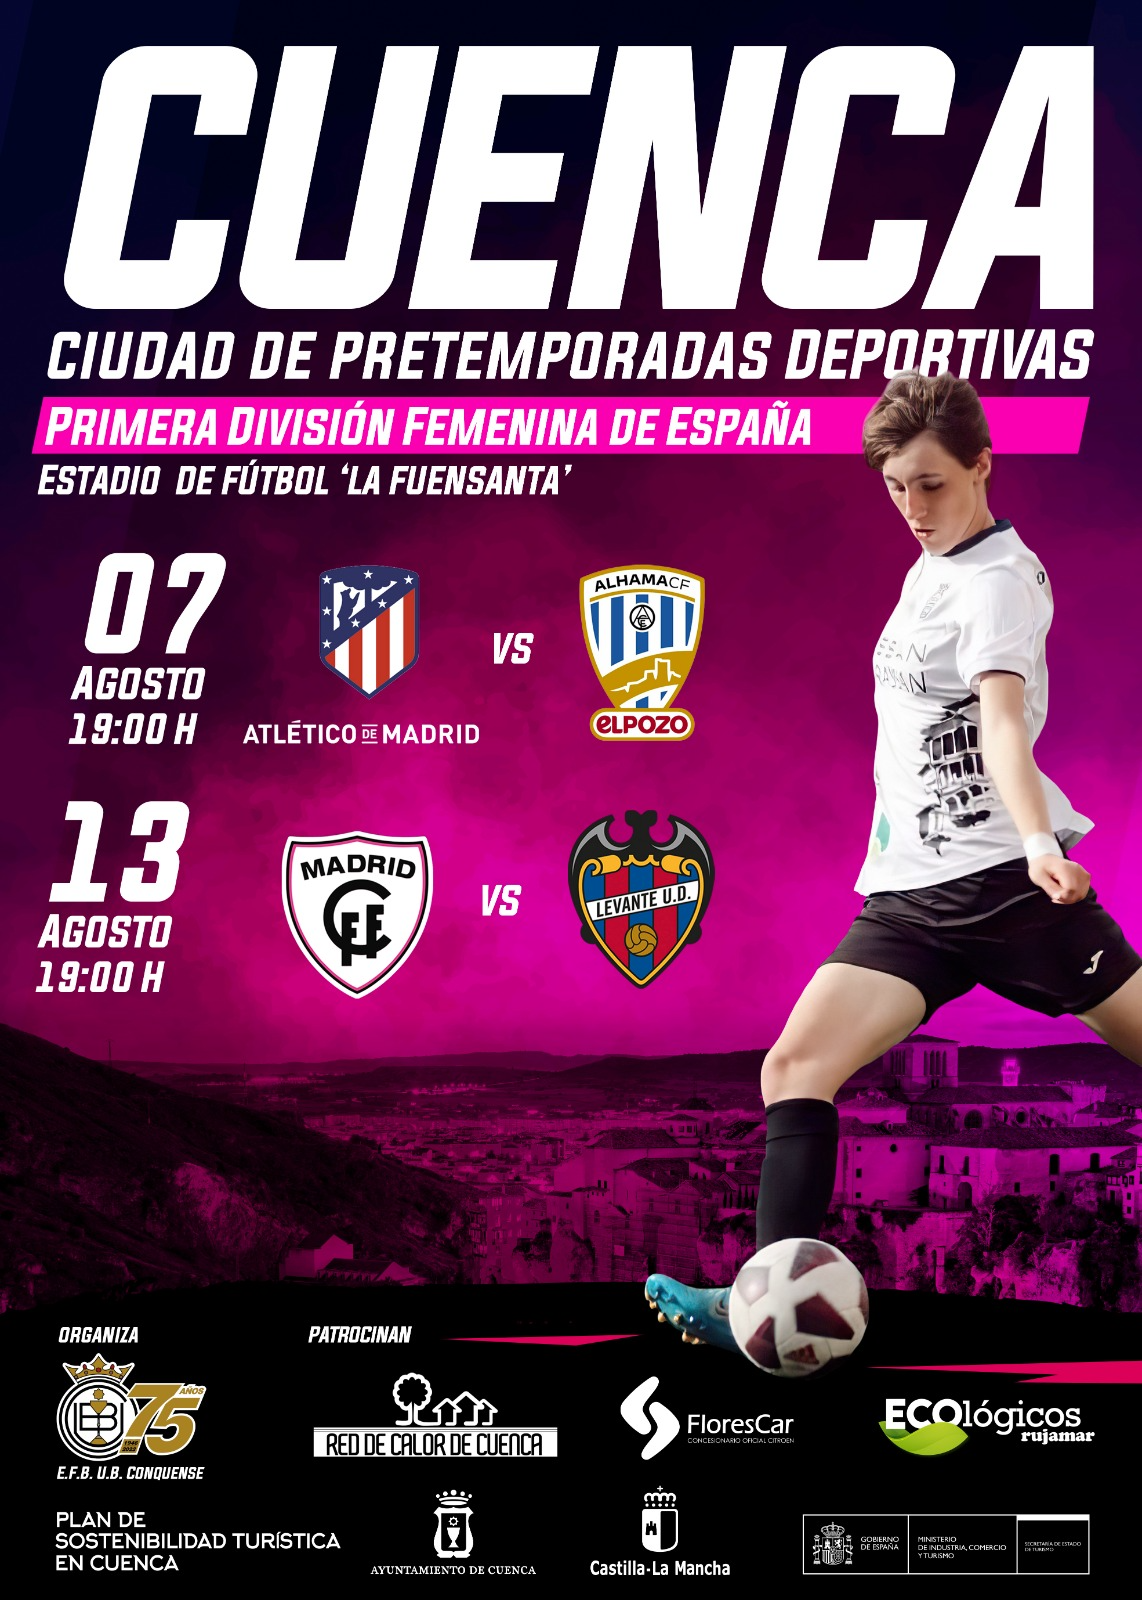 La Red de Calor de Cuenca patrocina la pretemporada de la primera división femenina de fútbol